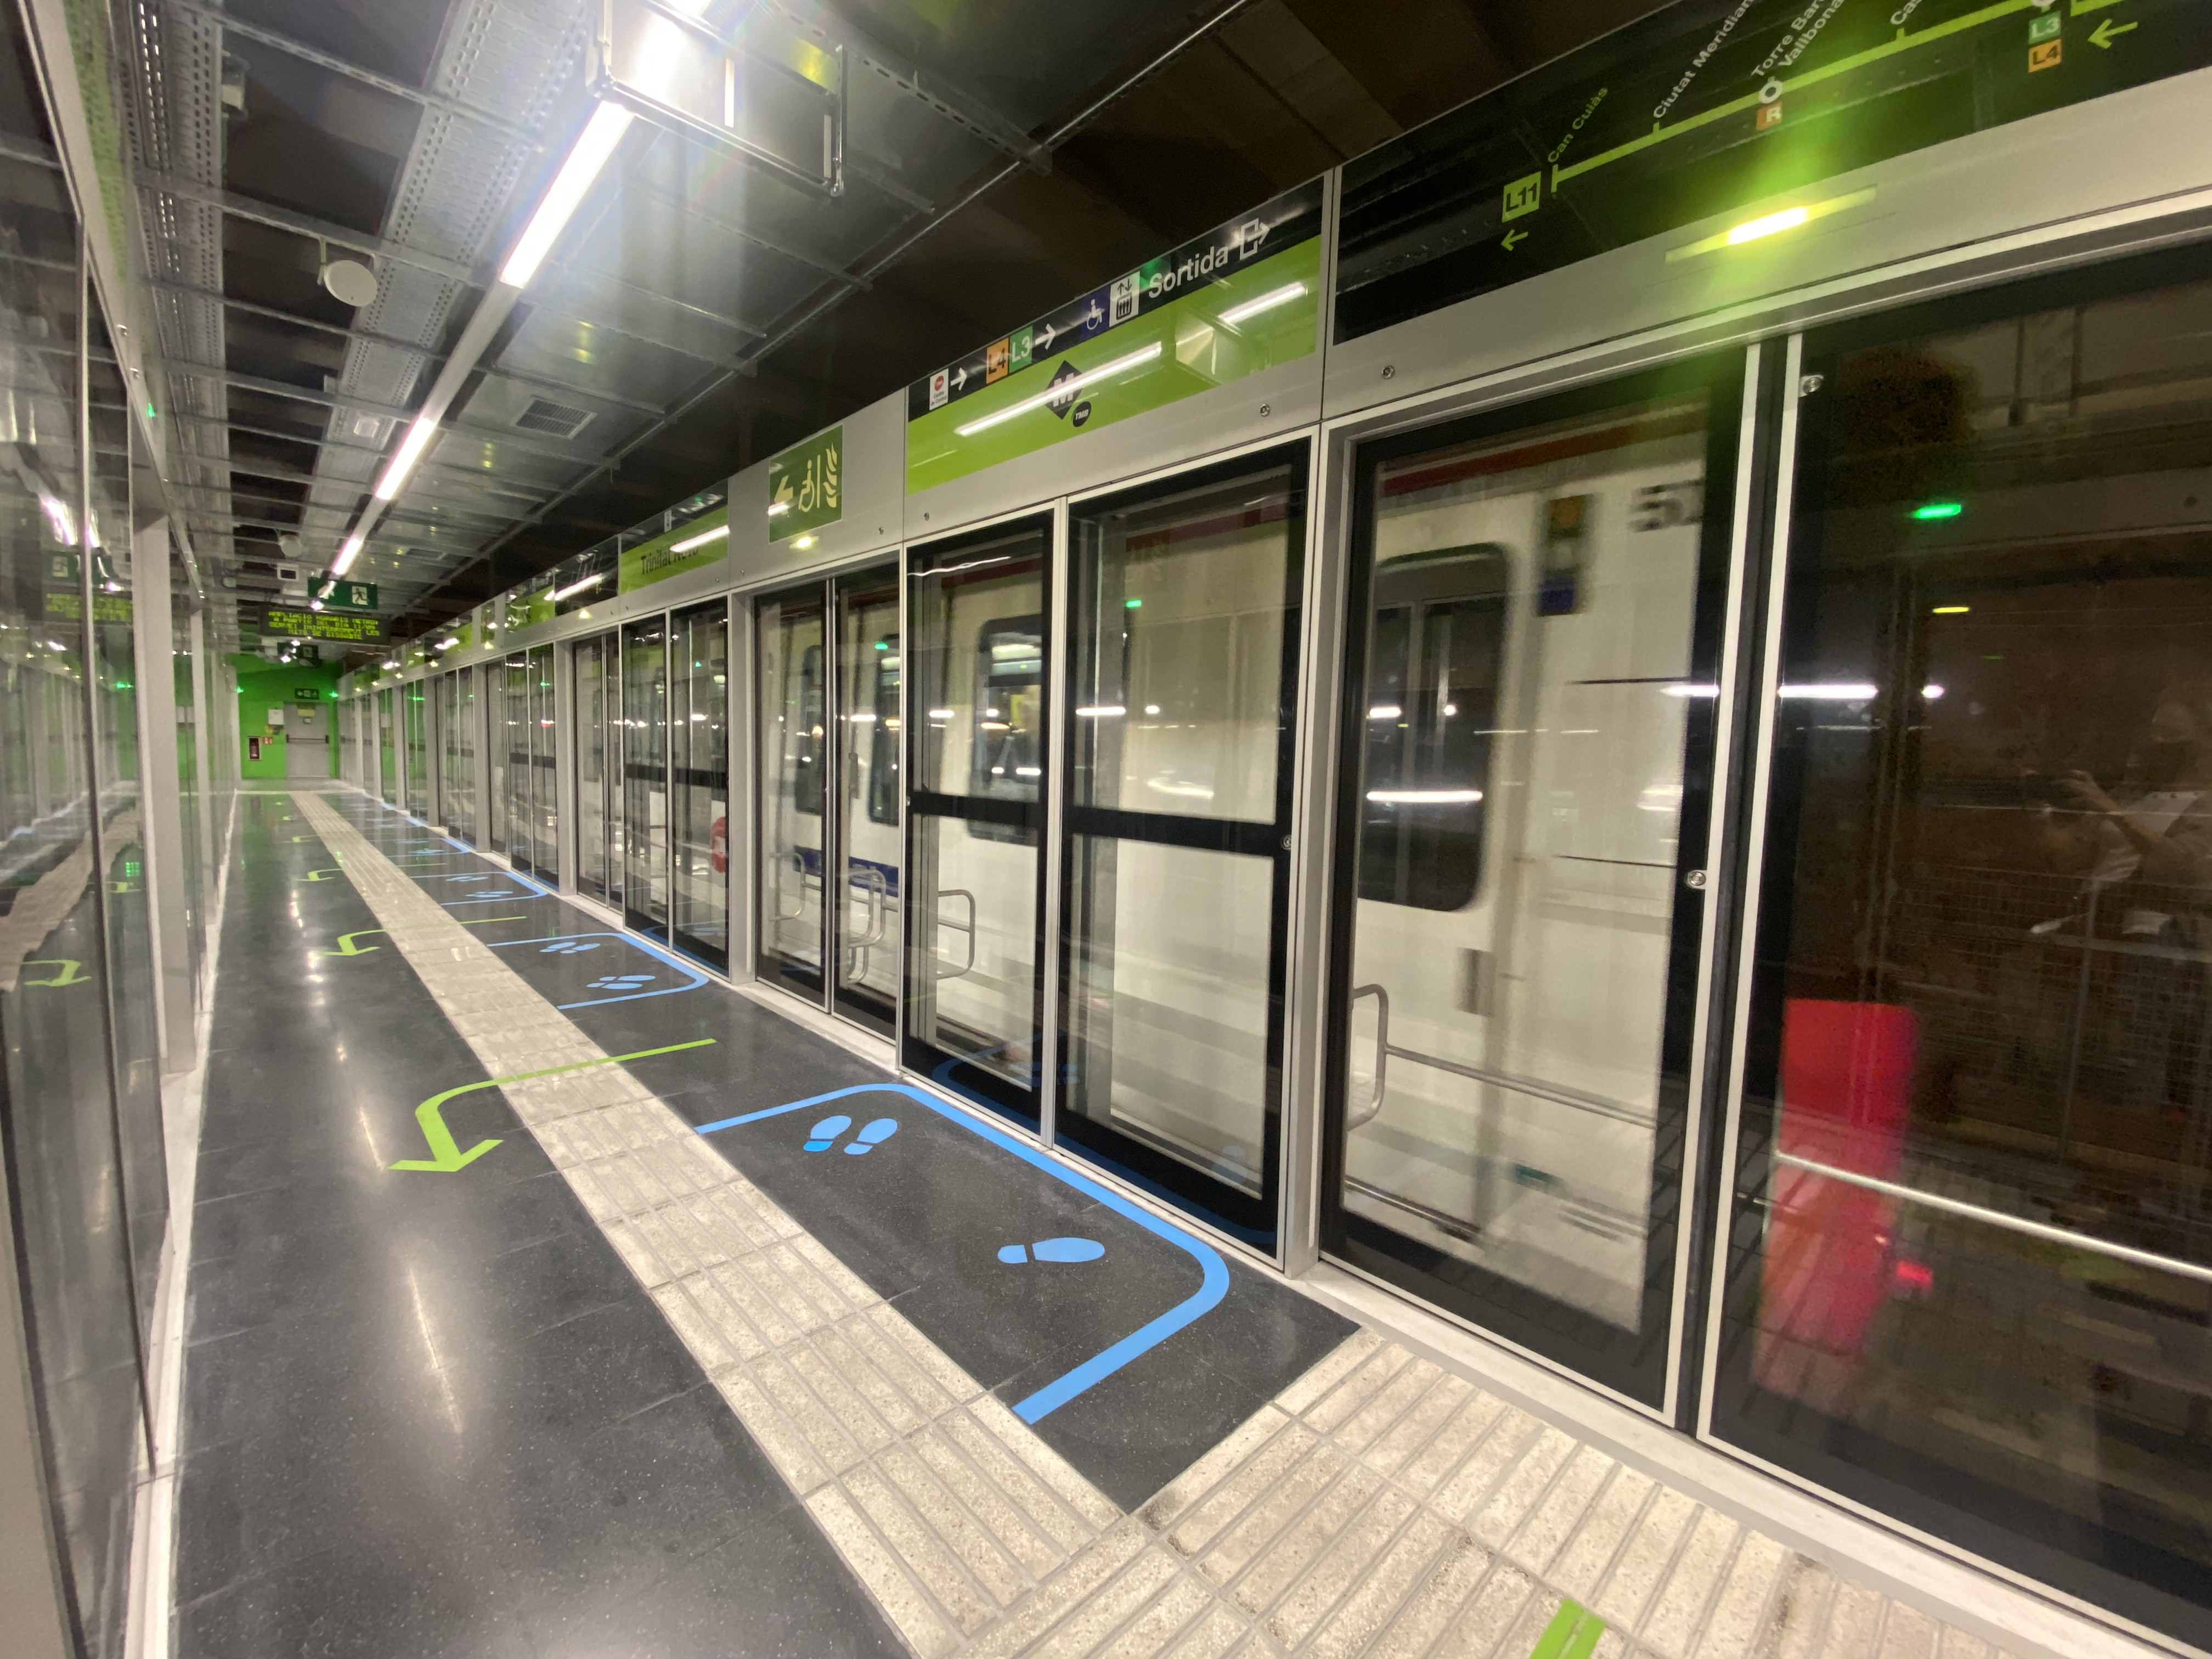 Masats Platform Doors Are in Service in Barcelona